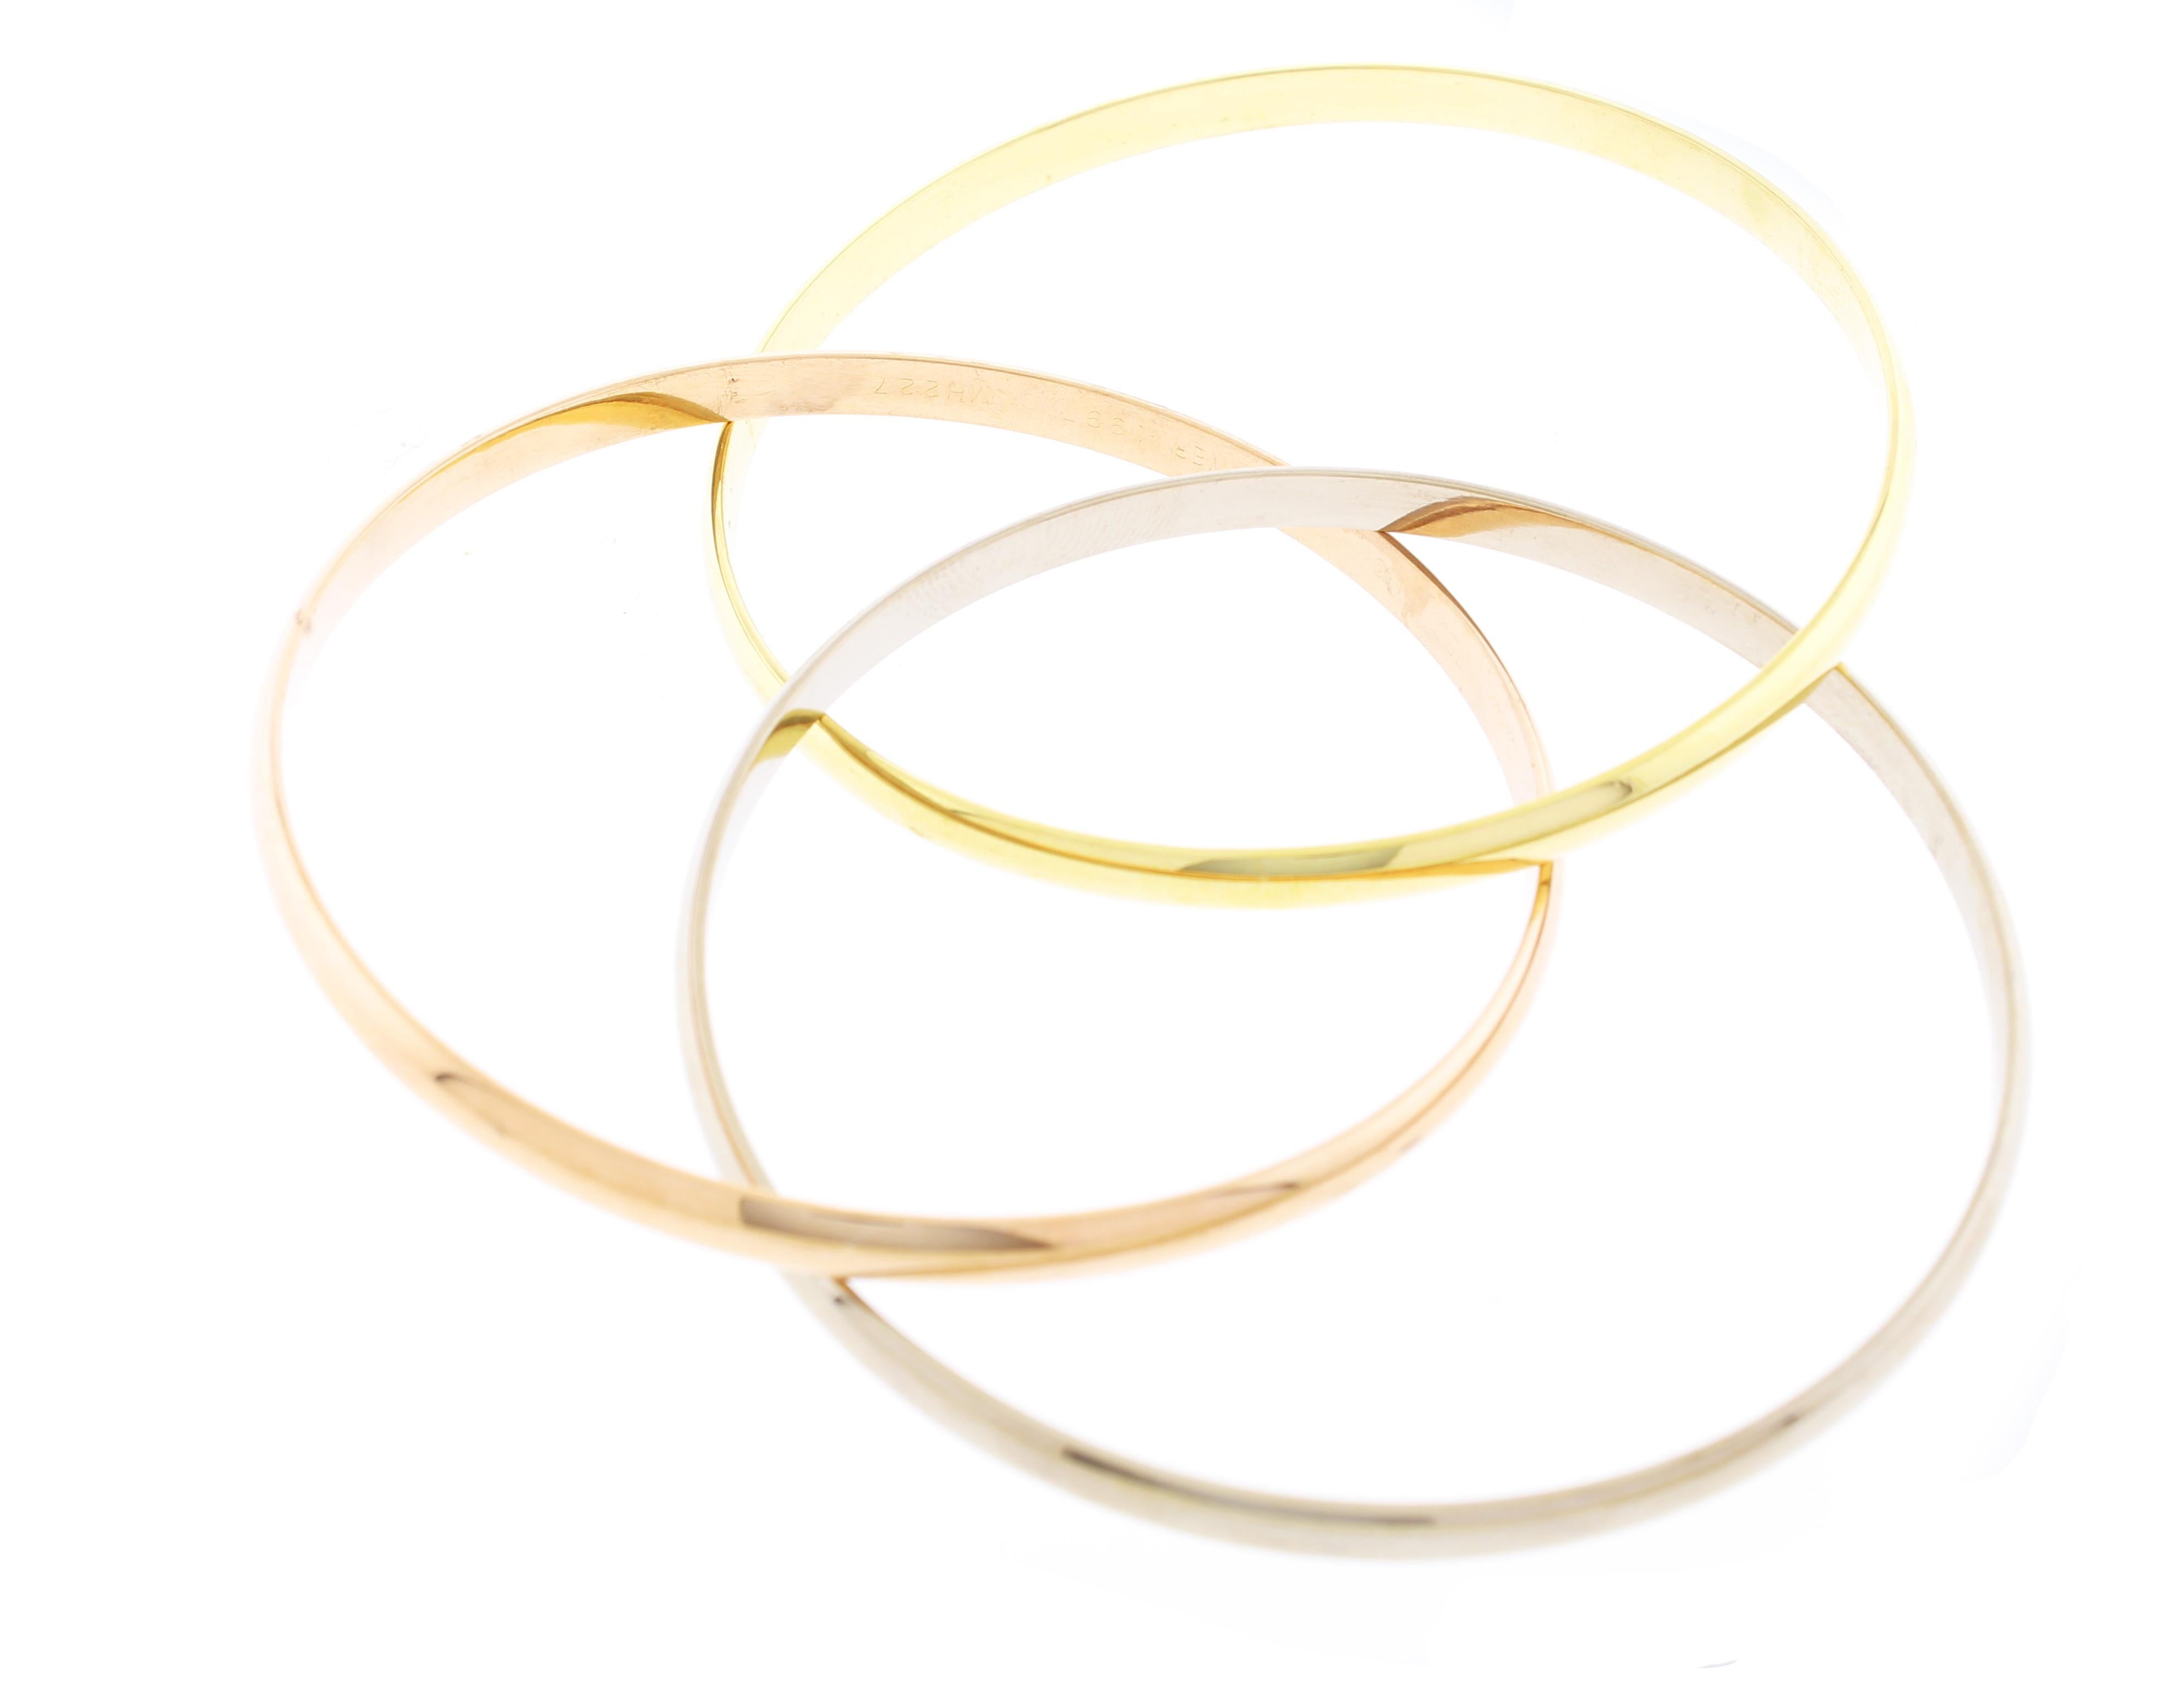 De la maison Cartier, ce bracelet est issu de la collection trinity.   Trois bandes entrelacées, chacune faite d'une couleur d'or différente : l'or jaune représentant la fidélité, l'or rose l'amour et l'or blanc l'amitié.
♦ Designer : Cartier
CIRCA